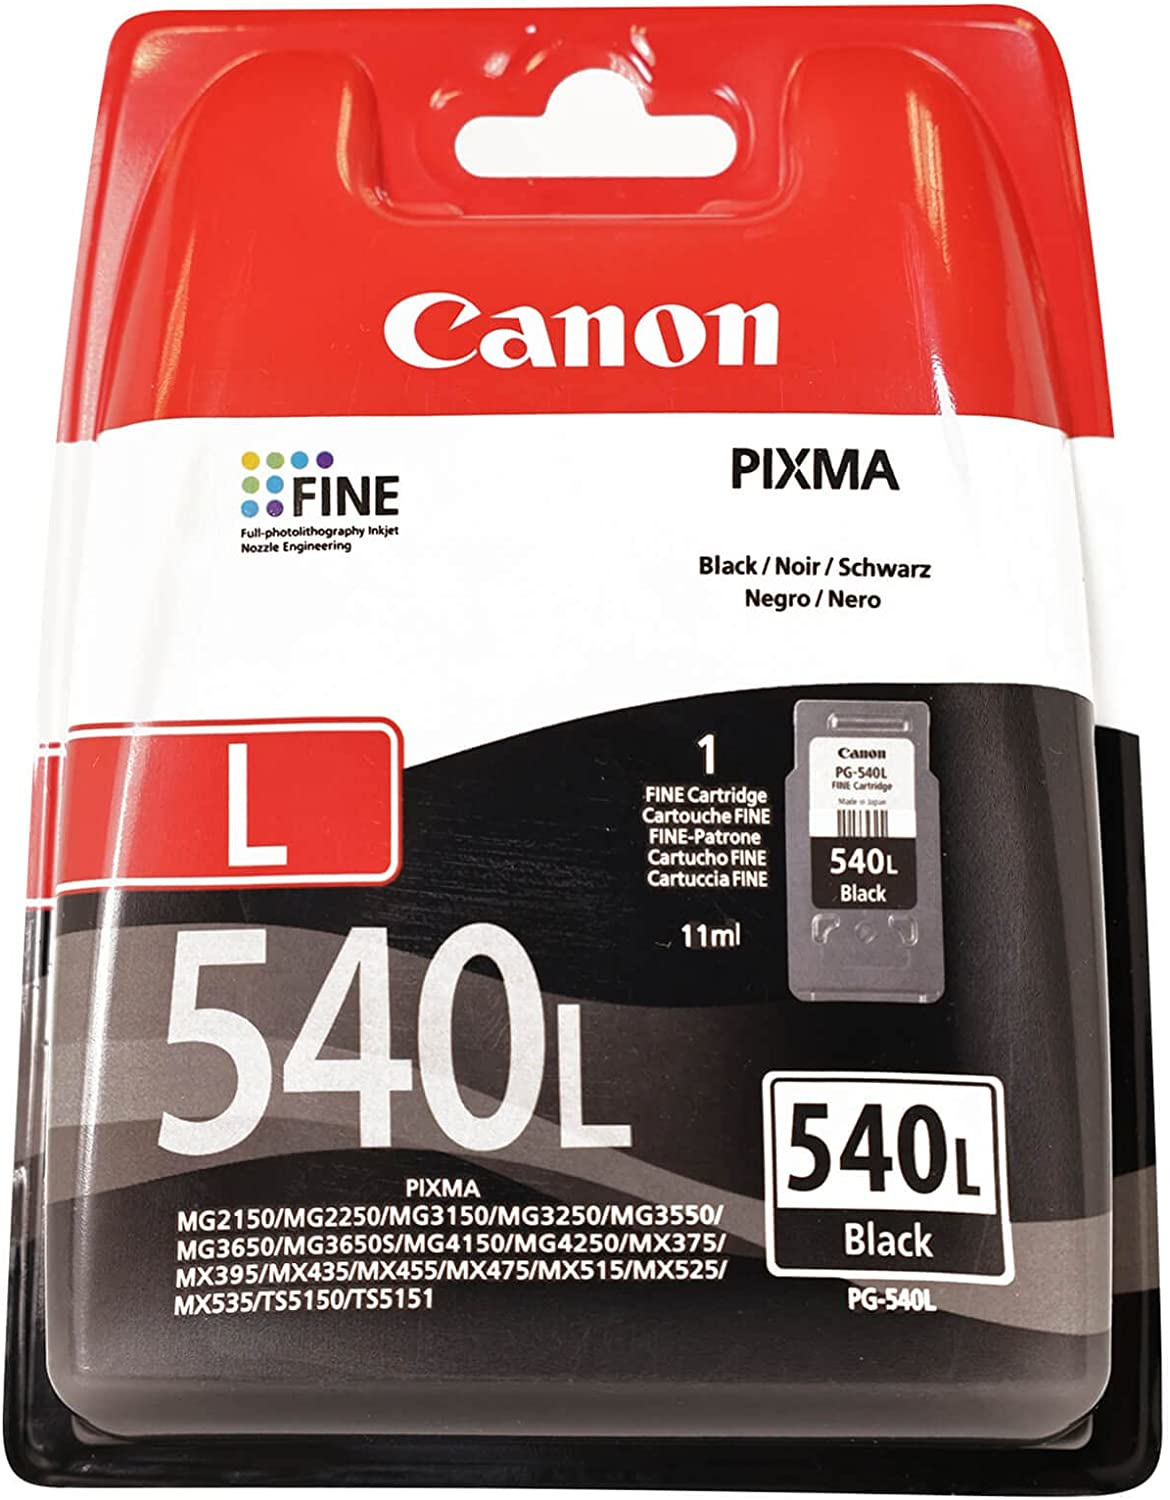 Cartouches d'encre pour l'imprimante Canon PIXMA MG3600 Series